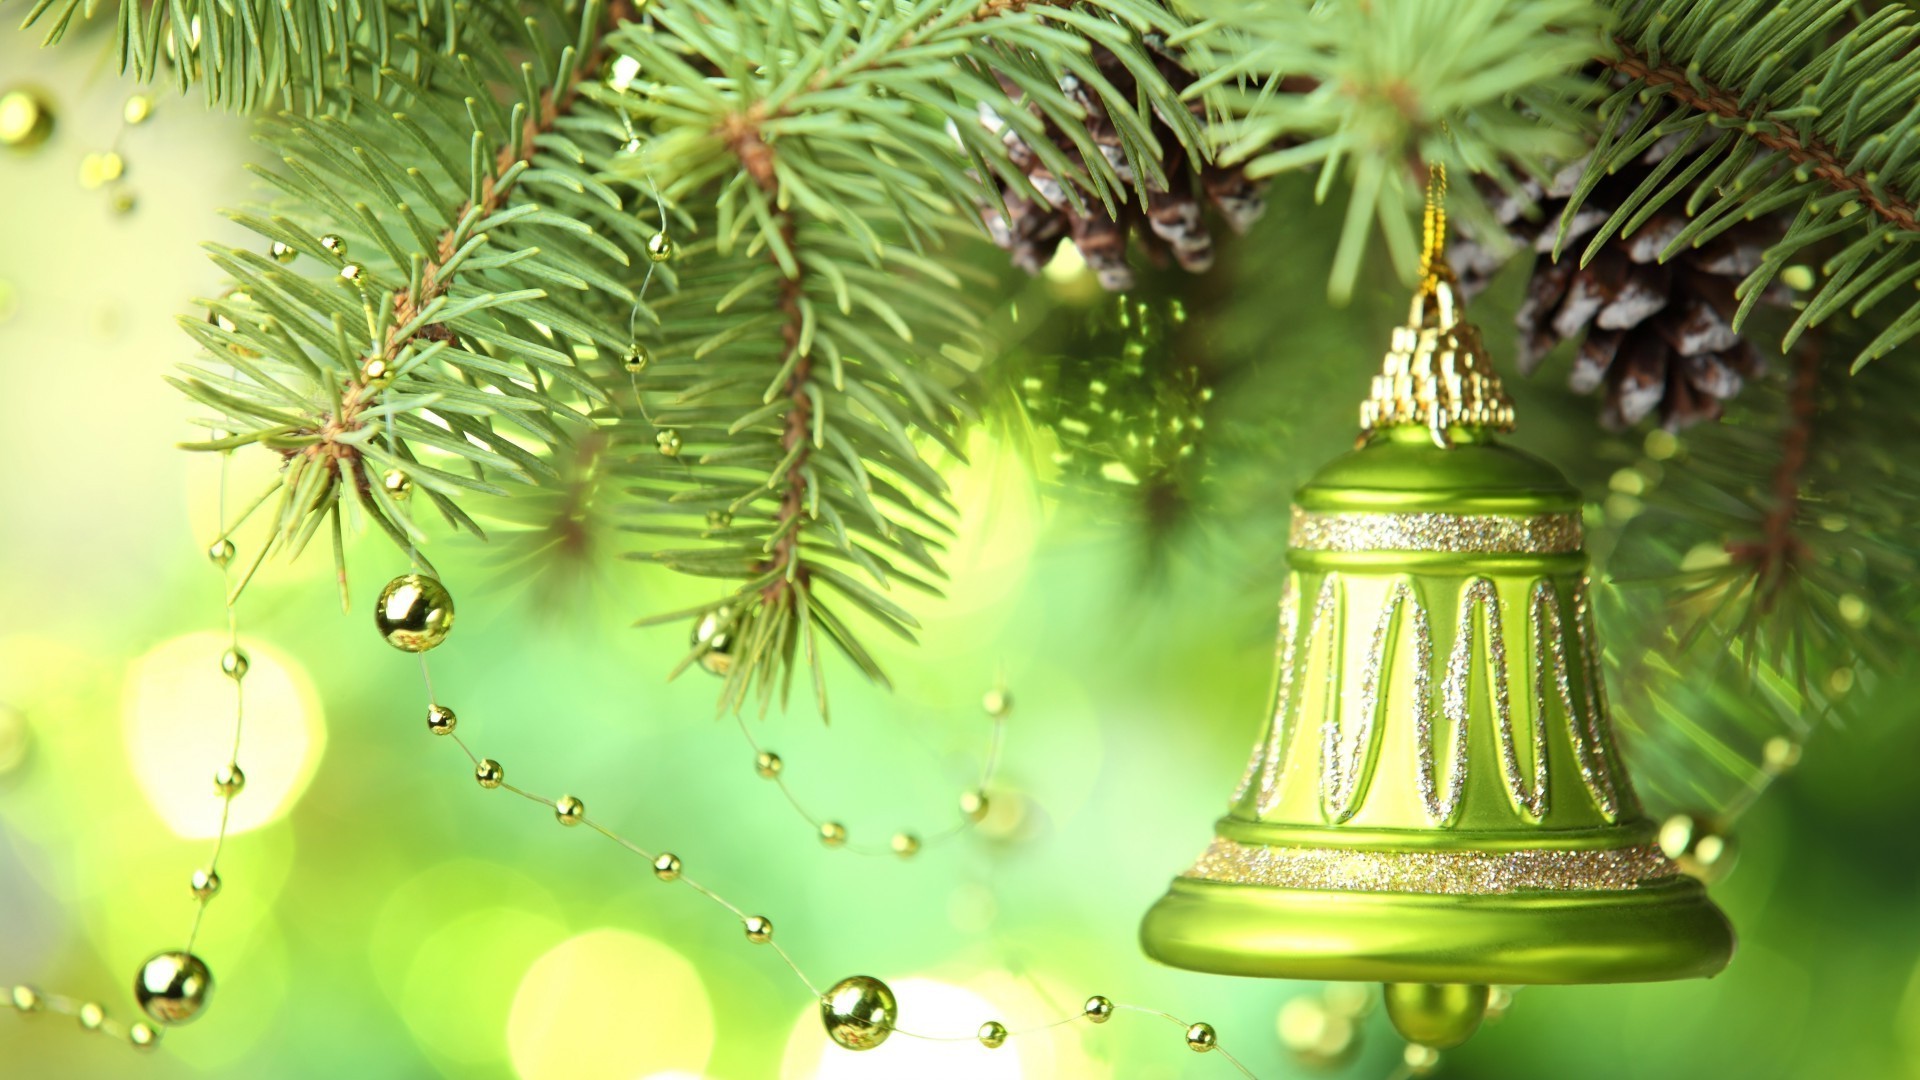 новый год рождество зима сосна украшения дерево висит пихта светит мерри праздник золото эвергрин филиал иглы ели мяч ева традиционные сезон